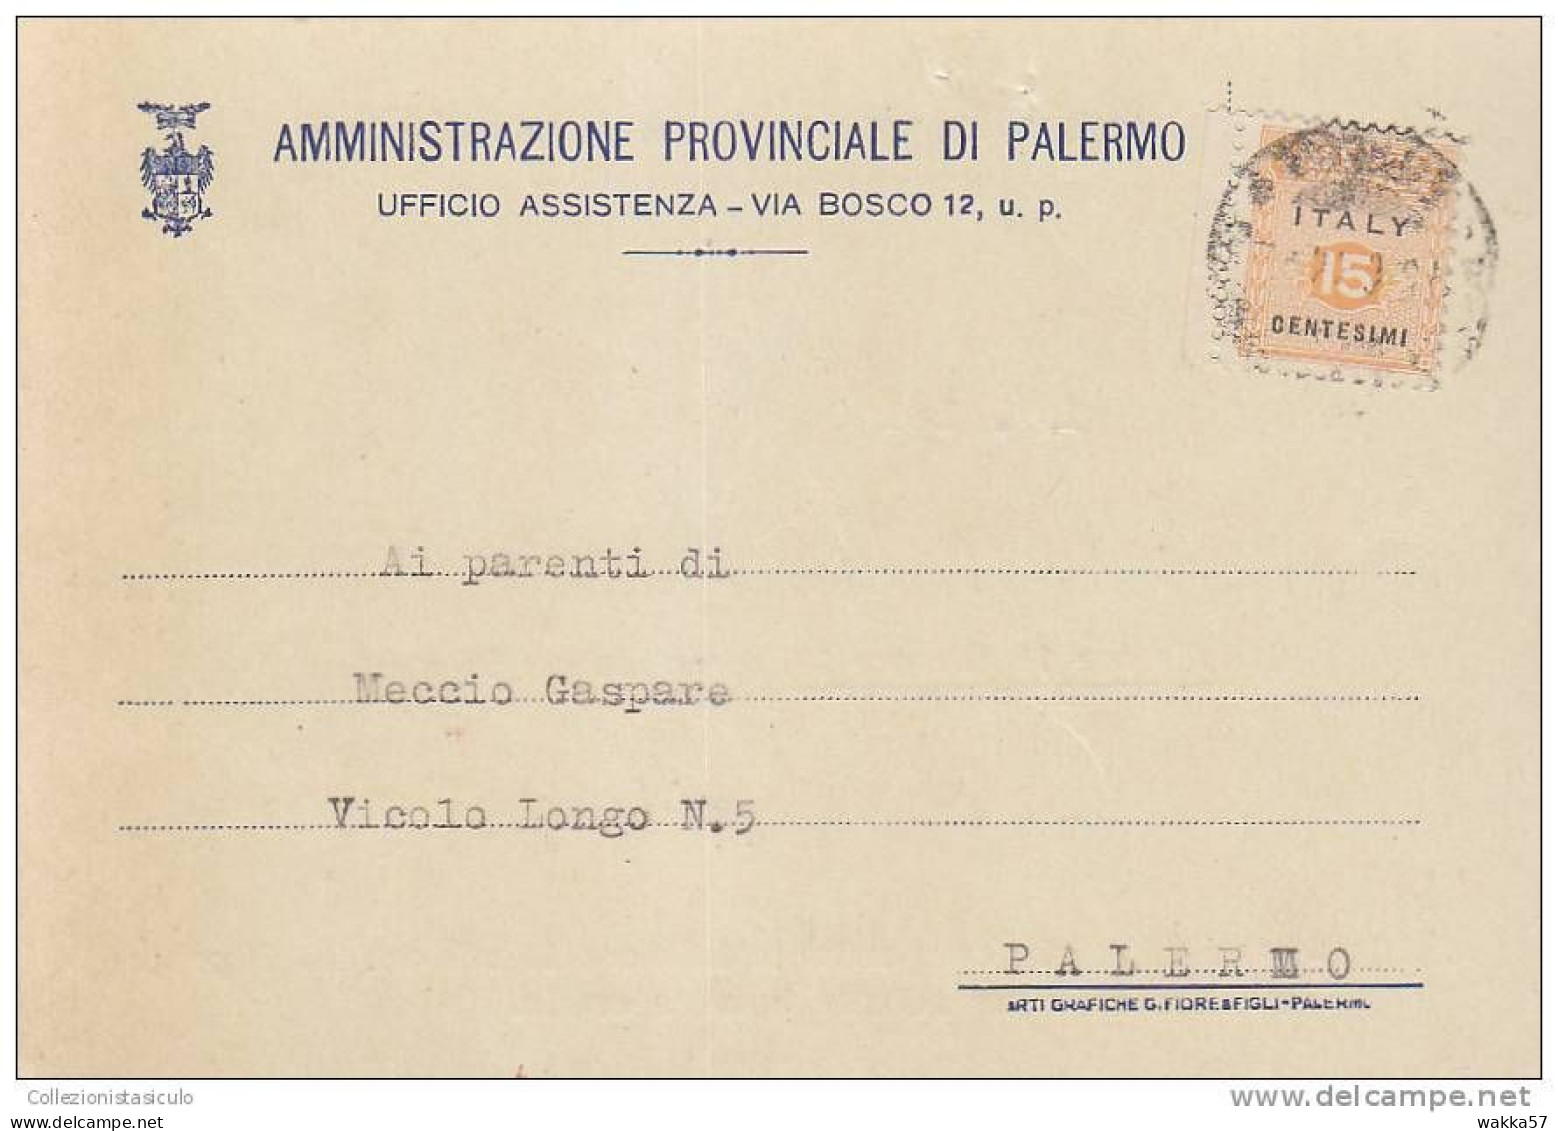 $-363- AMGOT Cent. 15 Cartolina Per Distretto Da Palermo X Città - Occup. Anglo-americana: Sicilia